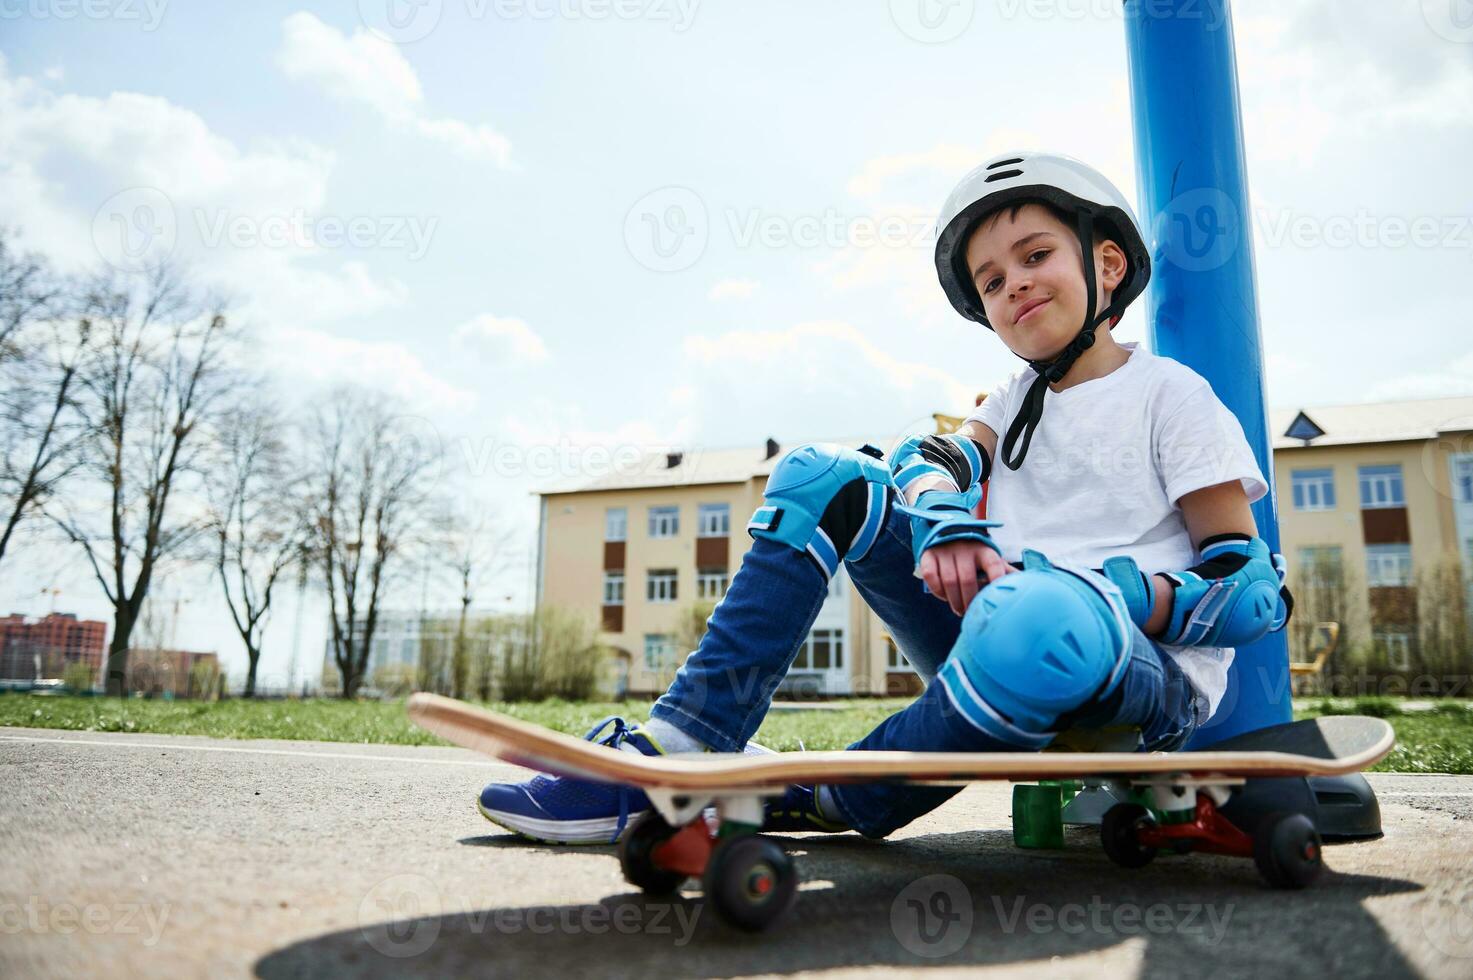 Unterseite Aussicht von lächelnd Junge im schützend Ausrüstung von Skateboardfahrer Sitzung auf Skateboard und suchen beim Kamera foto